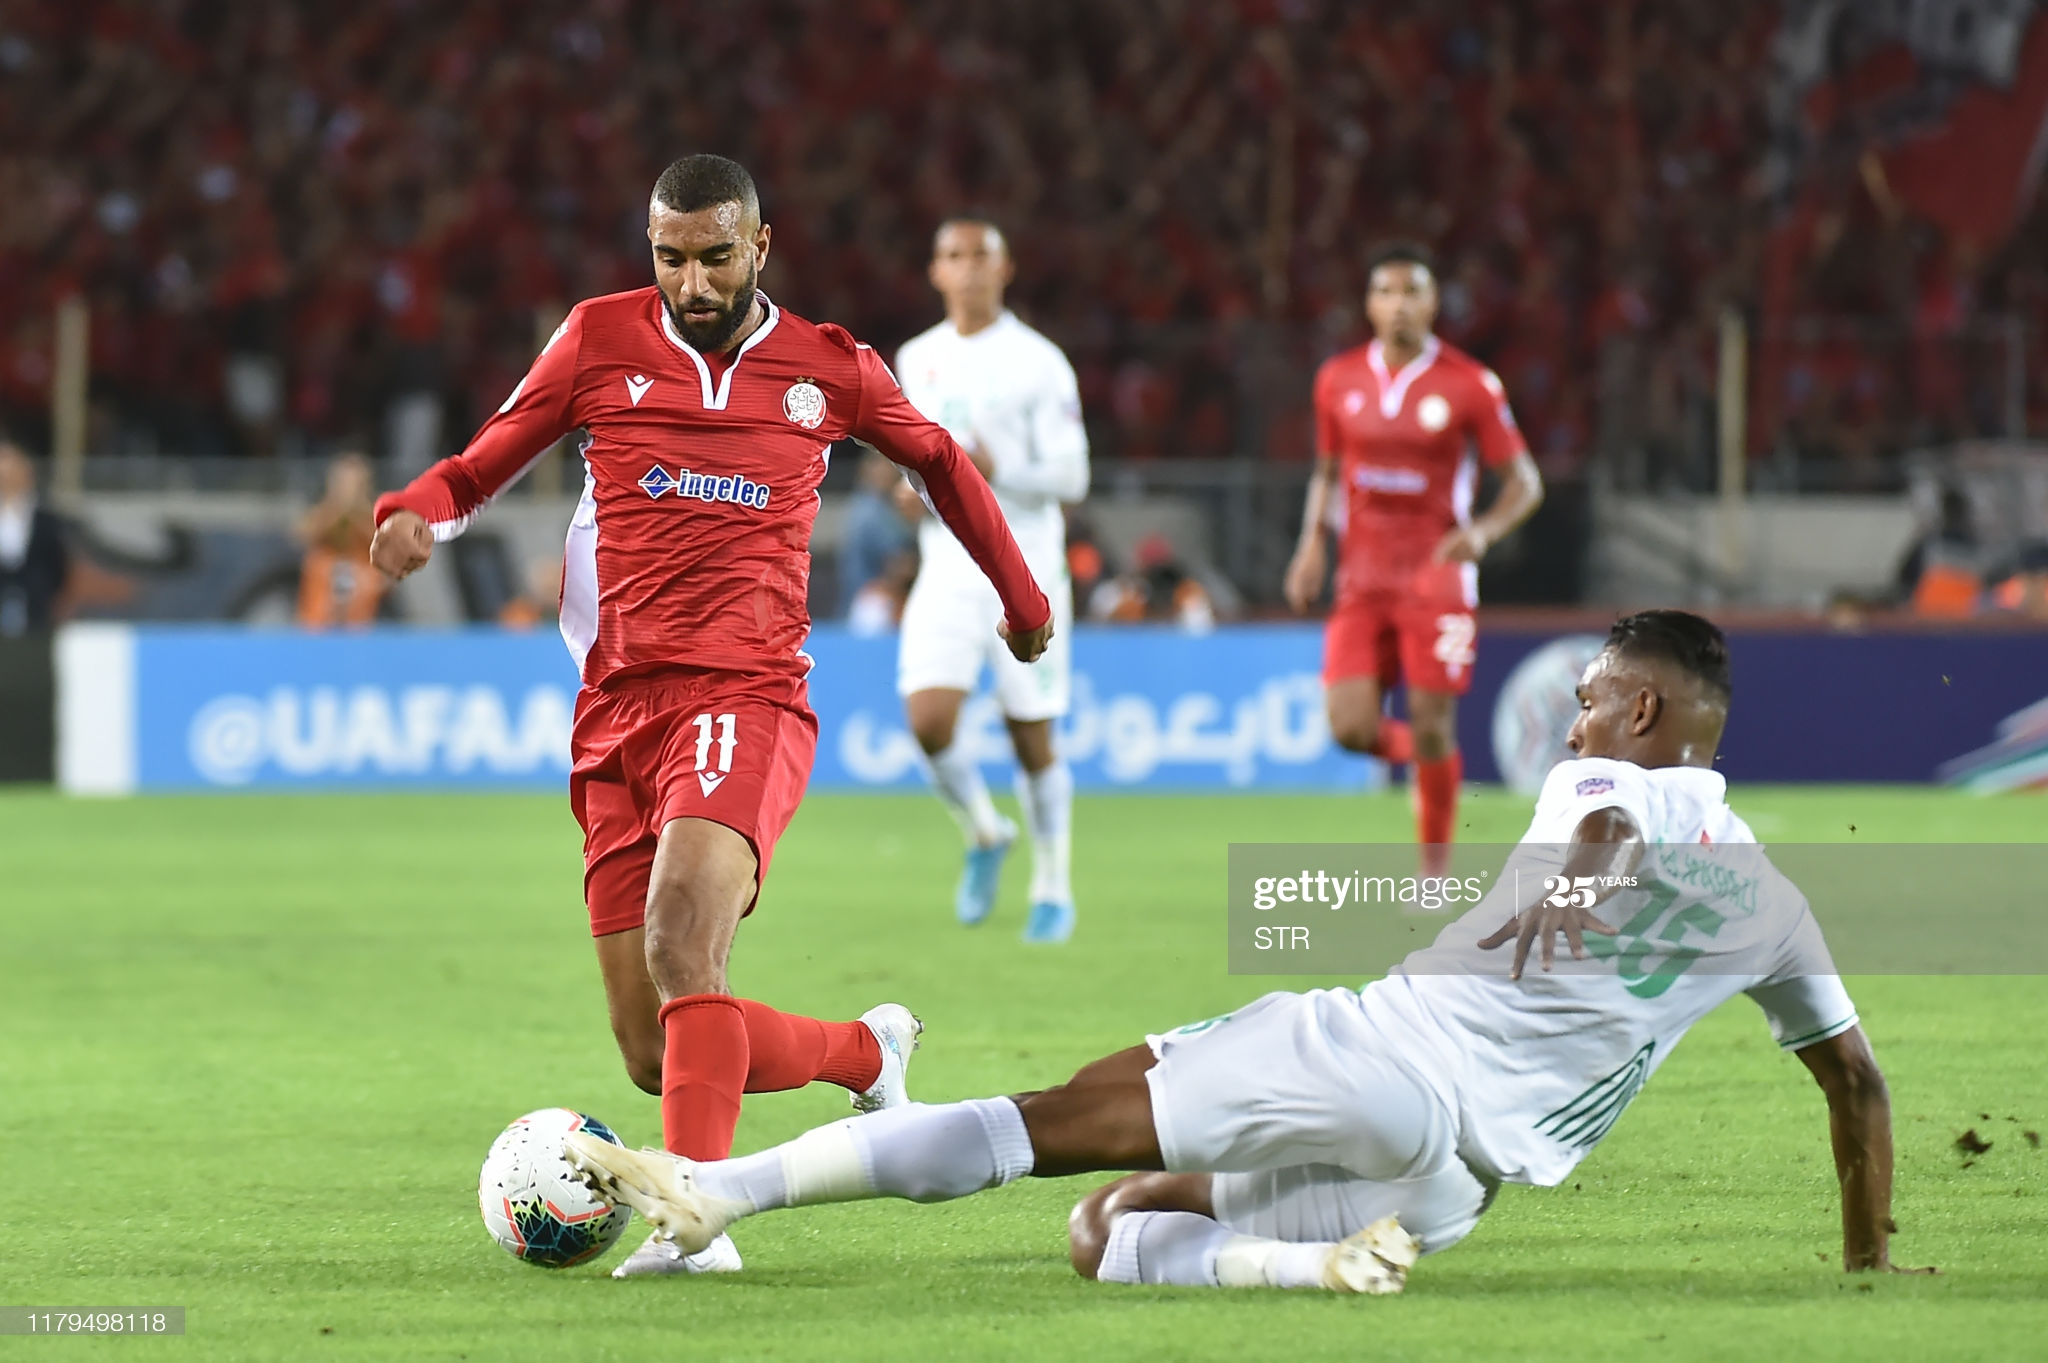 Maroc: Un triste 0-0 pour le derby Casablanca tant attendu